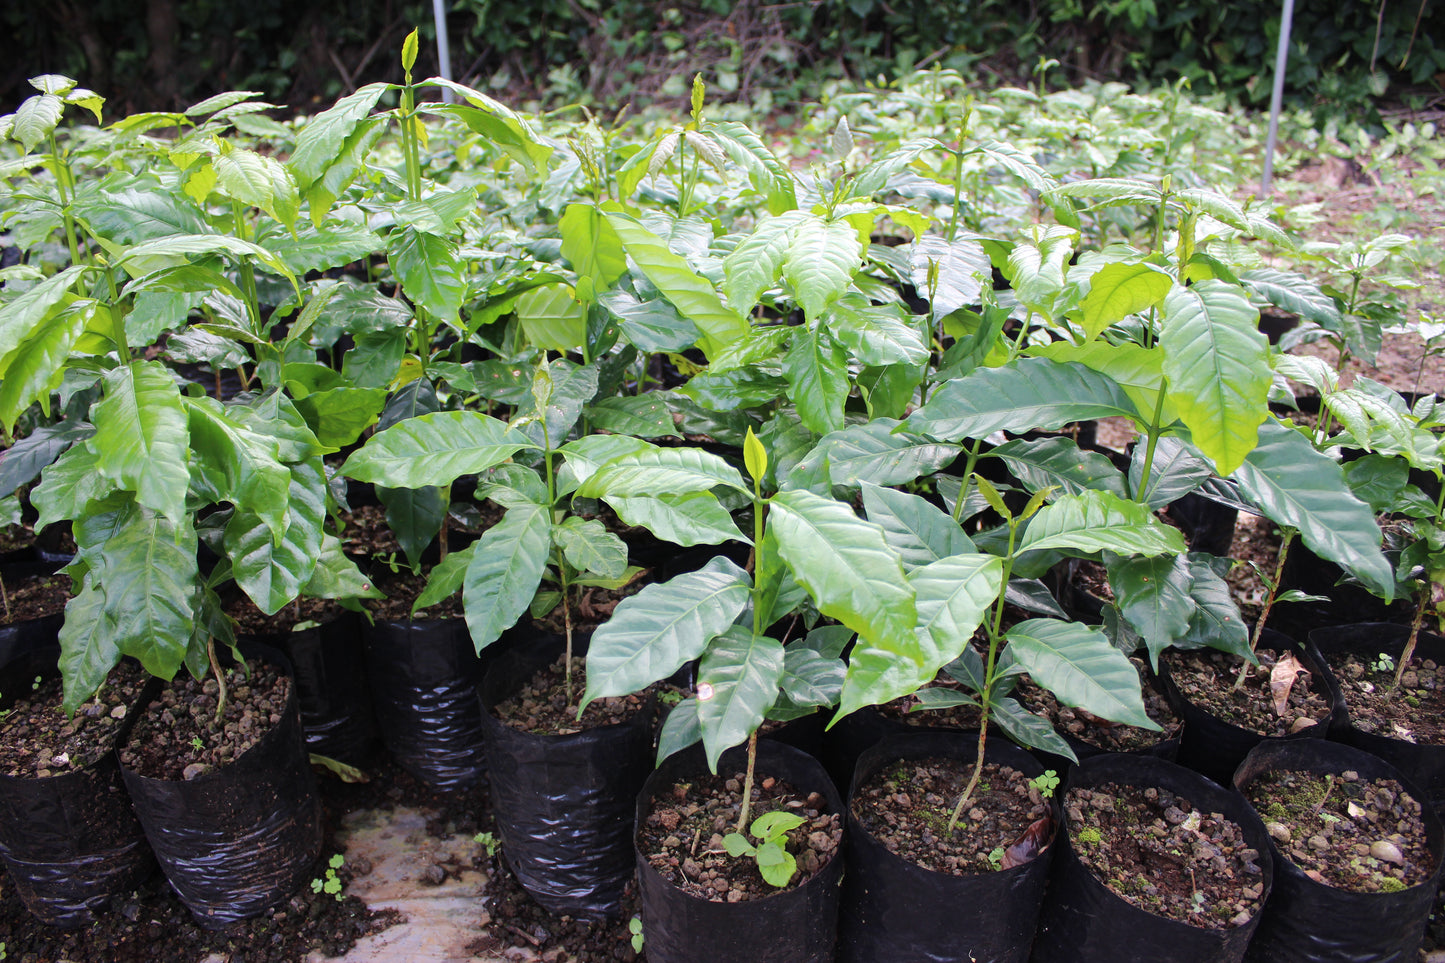 Honolulu Coffee's Kona coffee plants growing in the soil